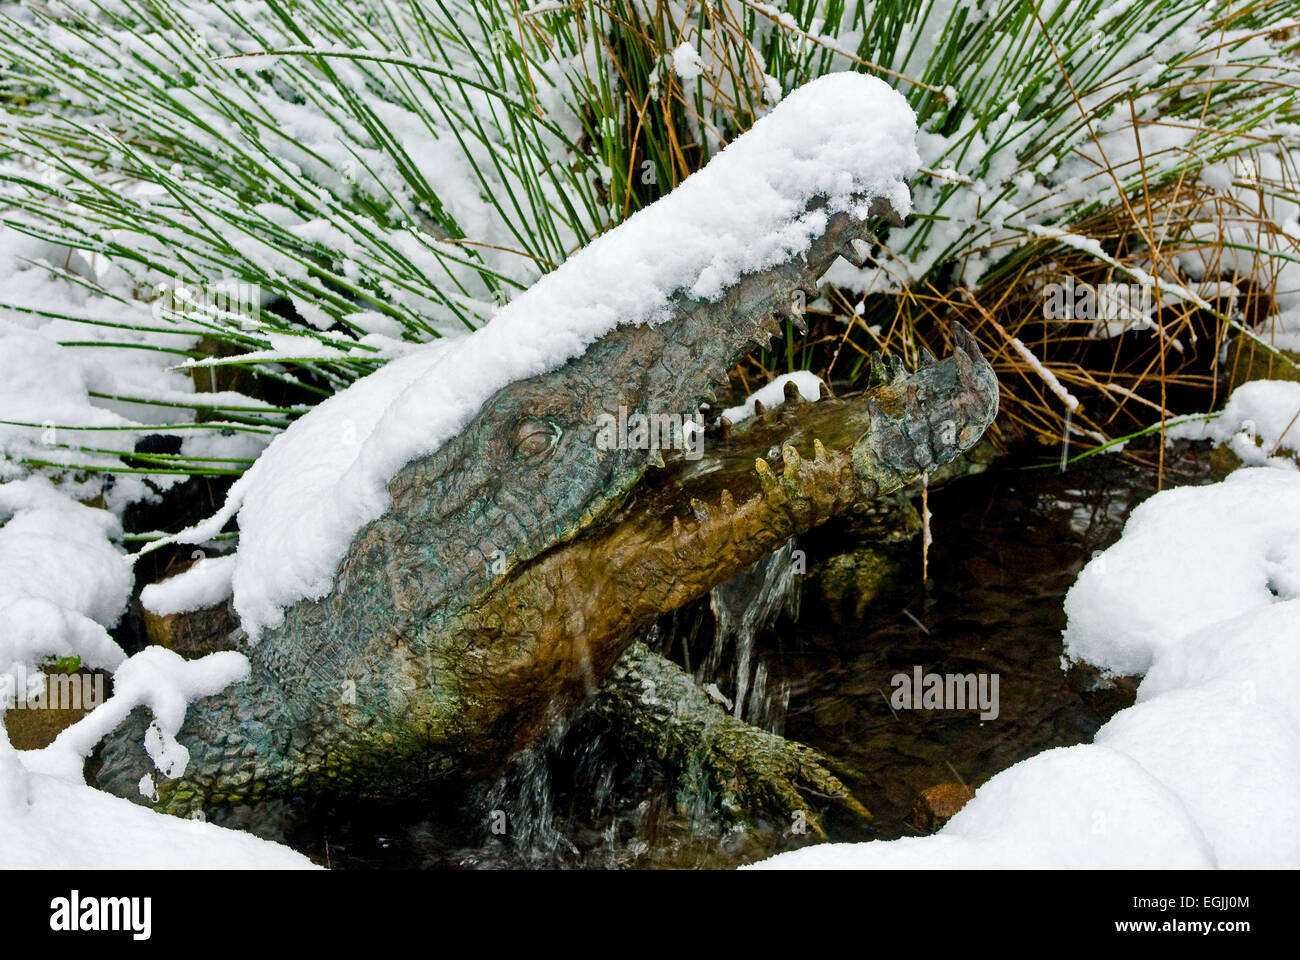 Statue en bronze d'une fontaine d'un crocodile d'une couverture de neige Banque D'Images